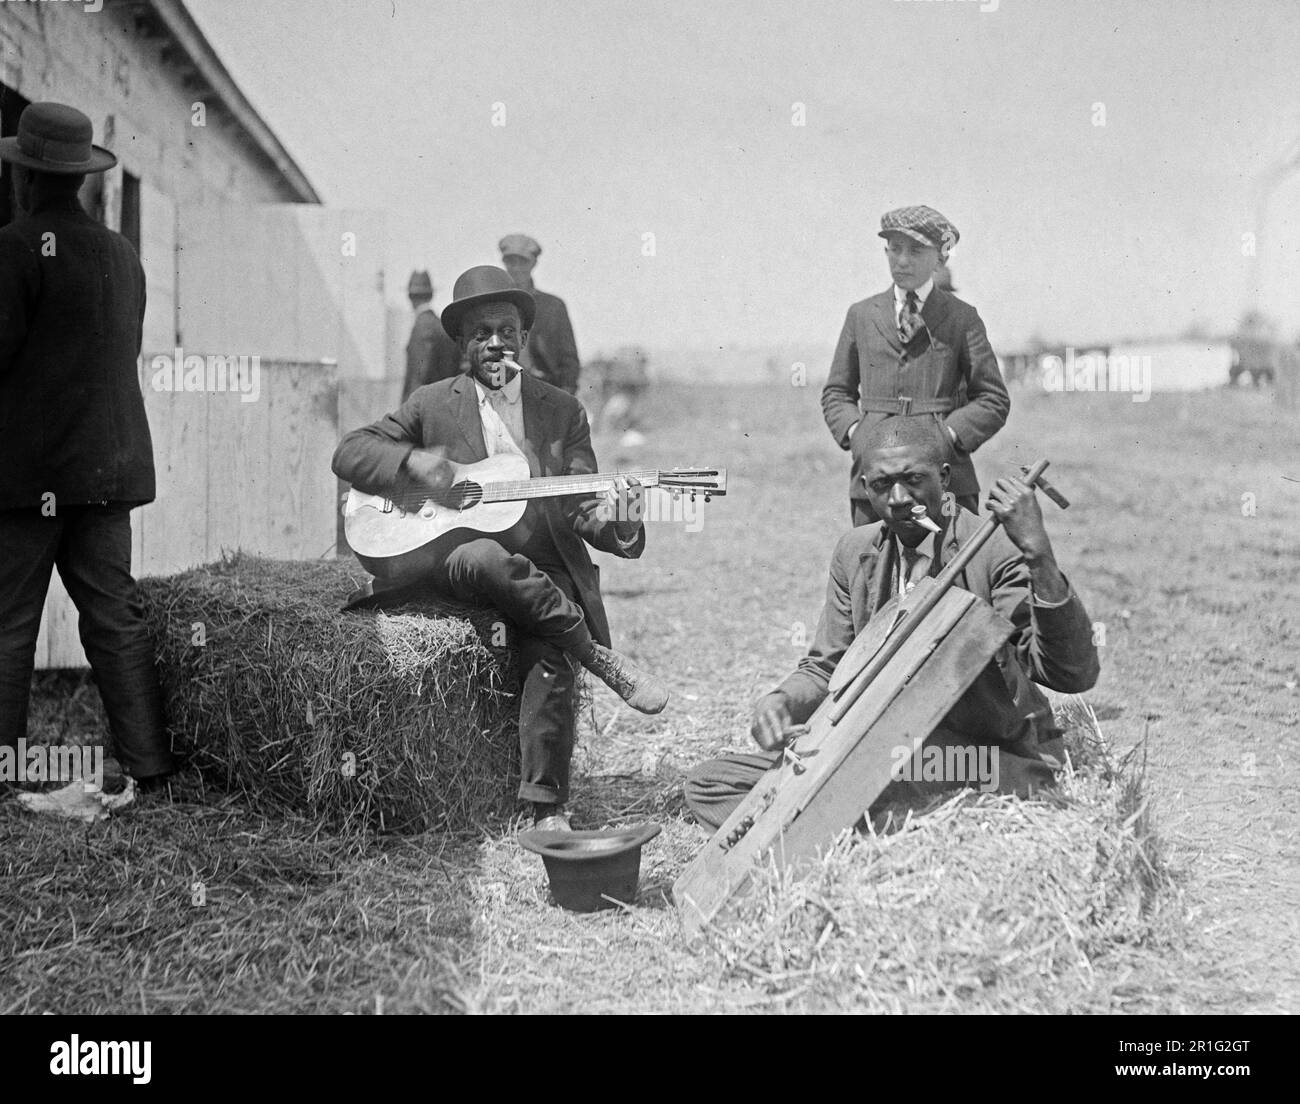 Archivfoto: Das Foto zeigt zwei Männer, wahrscheinlich Afroamerikaner, die auf Heuballen sitzen und vor einer Scheune oder einem Stall Instrumente spielen. Ein Mann spielt Gitarre, der andere spielt ein Instrument, das einem Cello ähnelt; beide Männer spielen gleichzeitig Kazoos Ca. 1918-1920 Stockfoto